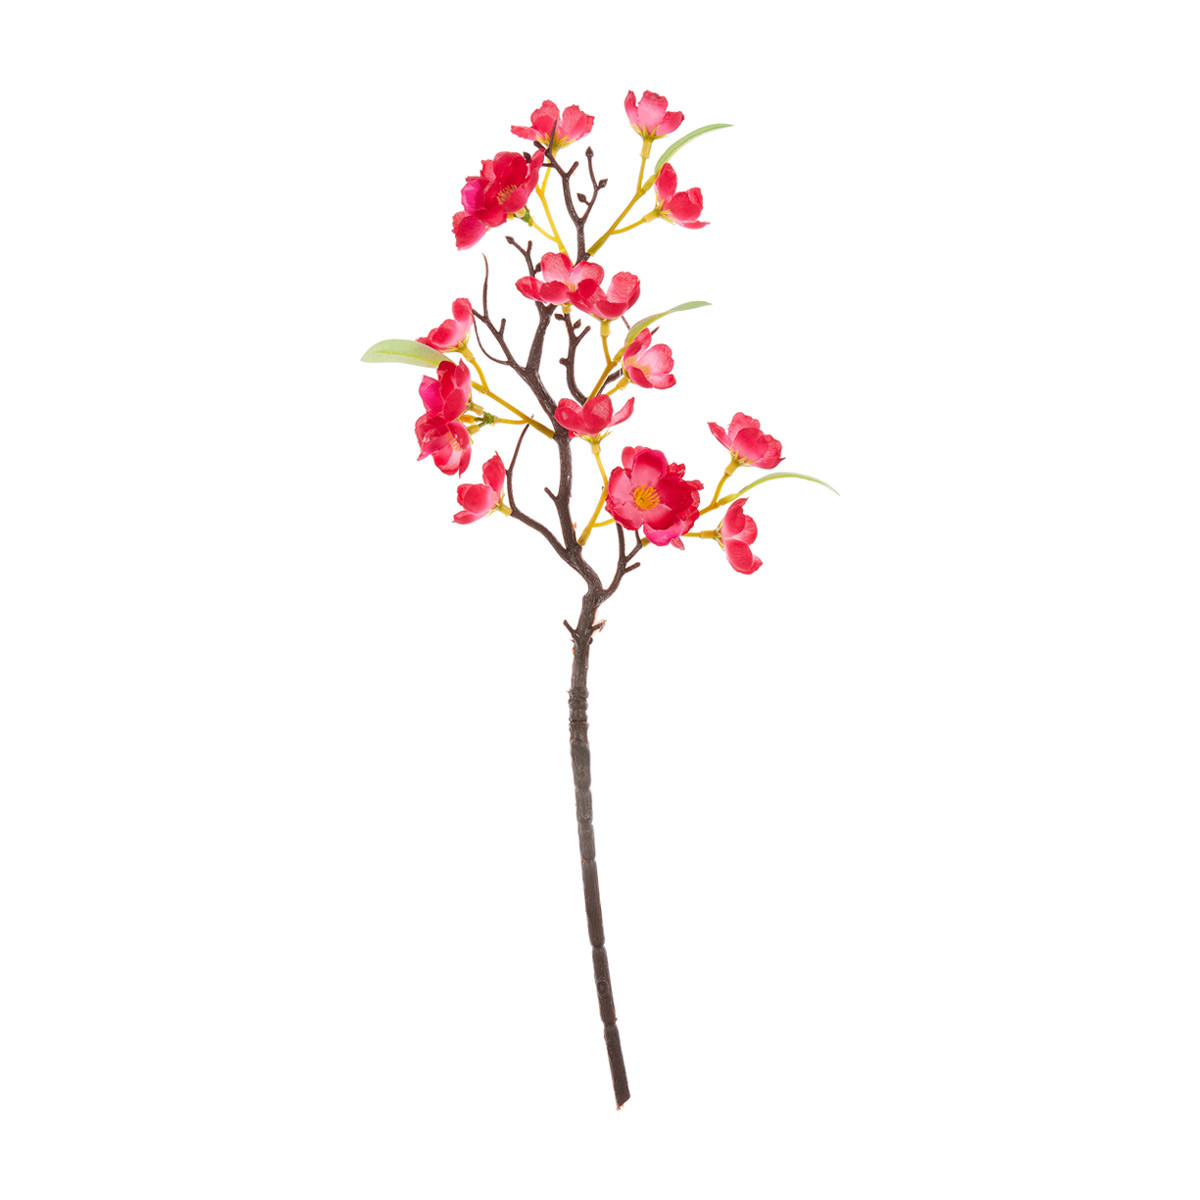 Artificial Dogwood Blossom Flower Stem